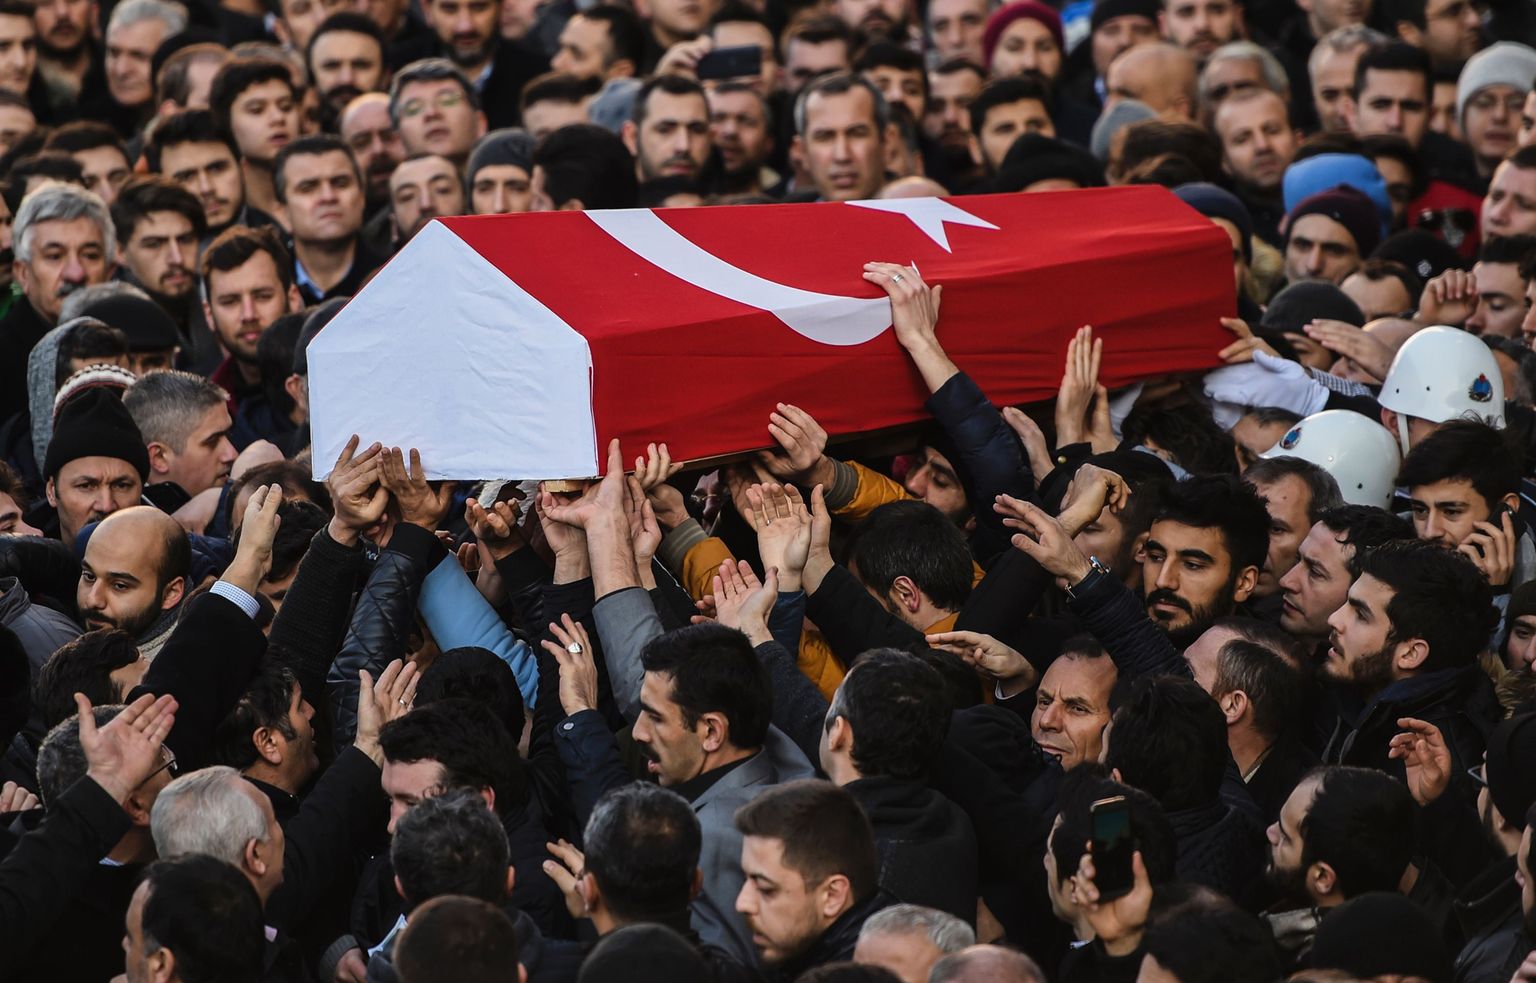 Ööklubis Reina toimunud tulistamises hukkunud 23-aastase Yunus Gormeki matused eile İstanbulis.